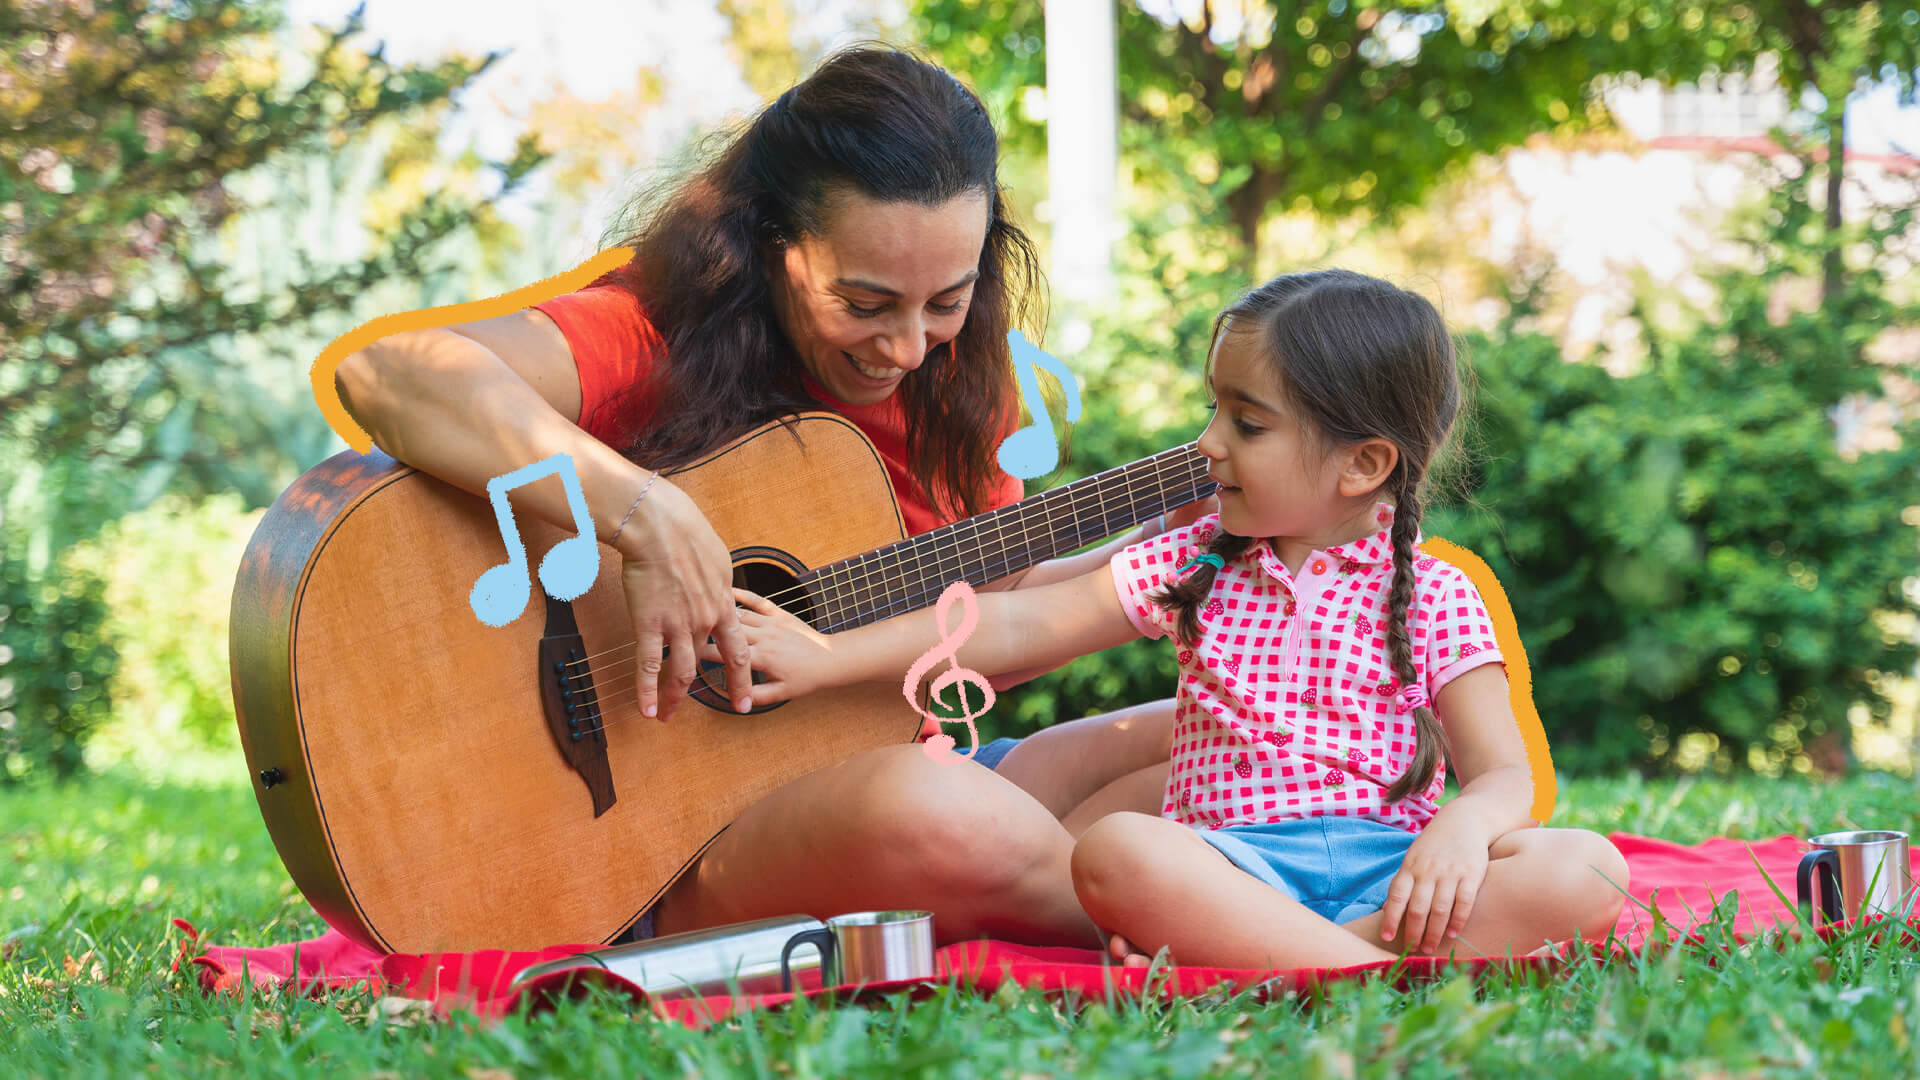 Na imagem, uma mãe toca violão para a filha. Ambas tem pele clara, estão sentadas na grama e sorriem. A imagem possui intervenções de rabiscos e notas musicais coloridas.